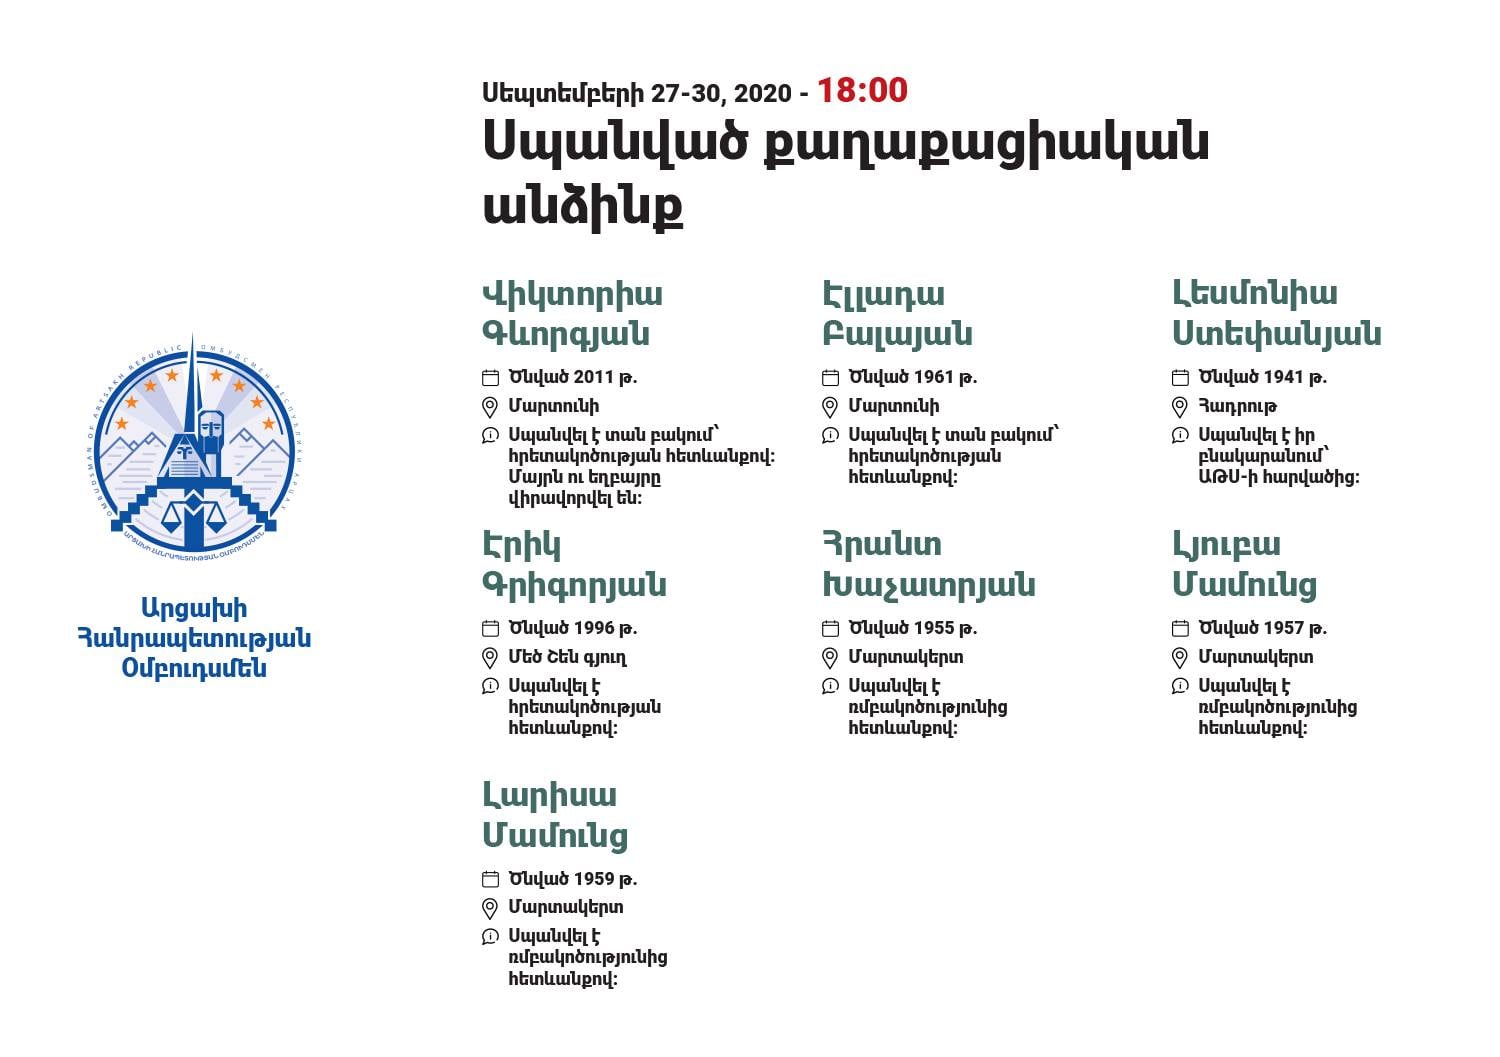 Սեպտեմբերի 27-ից առ այսօր ադրբեջանական թիրախավորման հետևանքով մահացած քաղաքացիական անձանց տվյալները, ներառյալ՝ Մարտակերտի այսօրվա դեպքերը